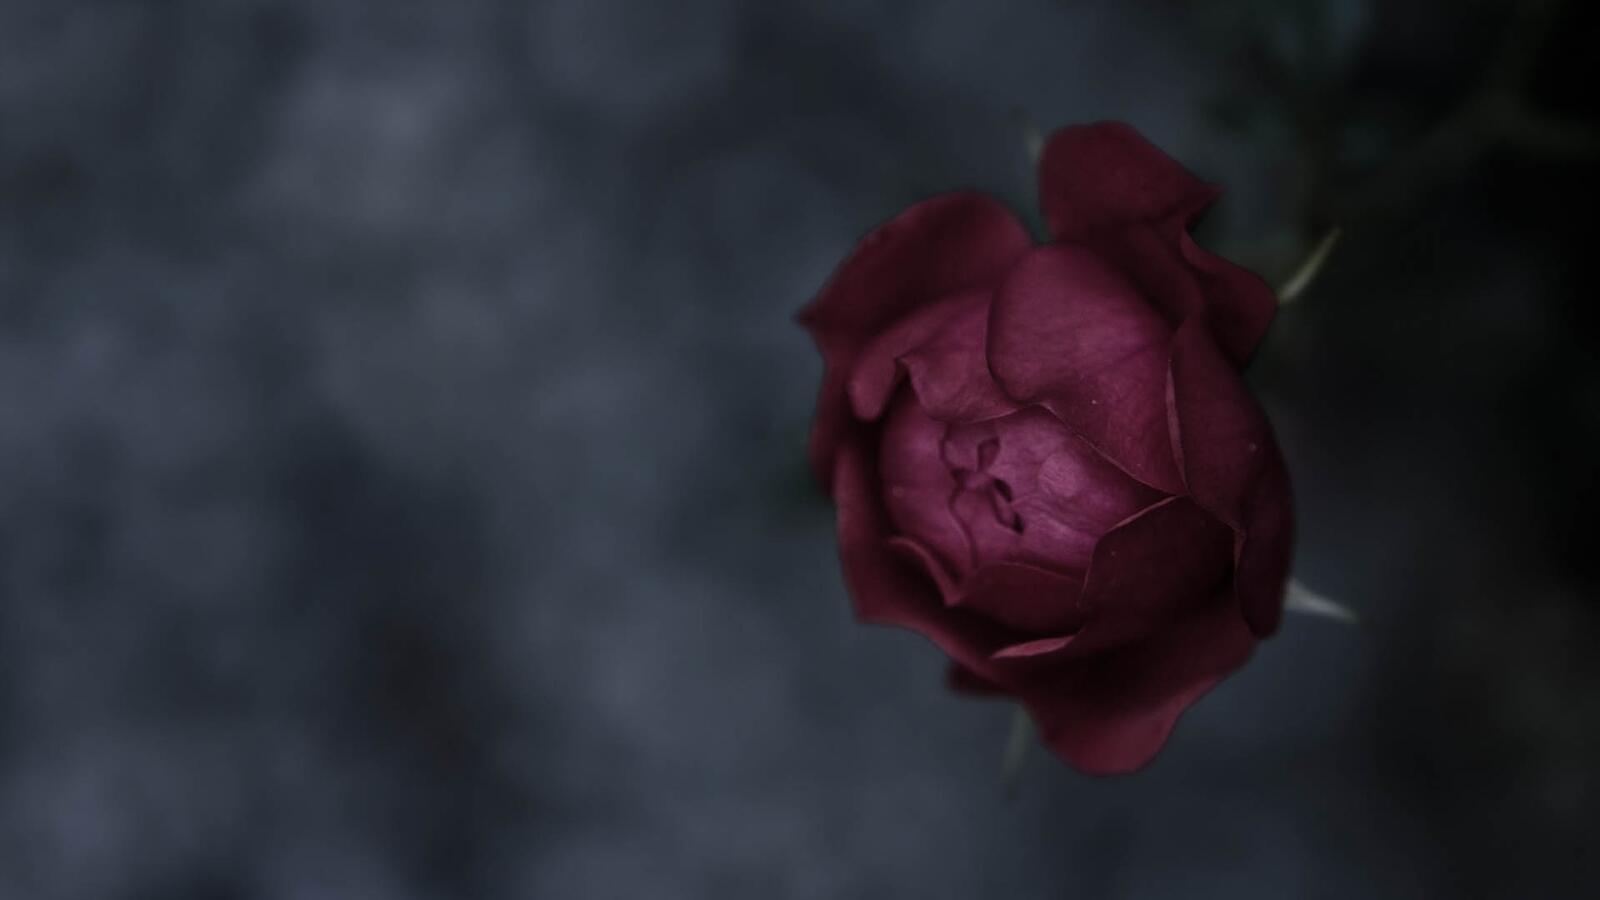 Бесплатное фото Бутон не распустившейся розы